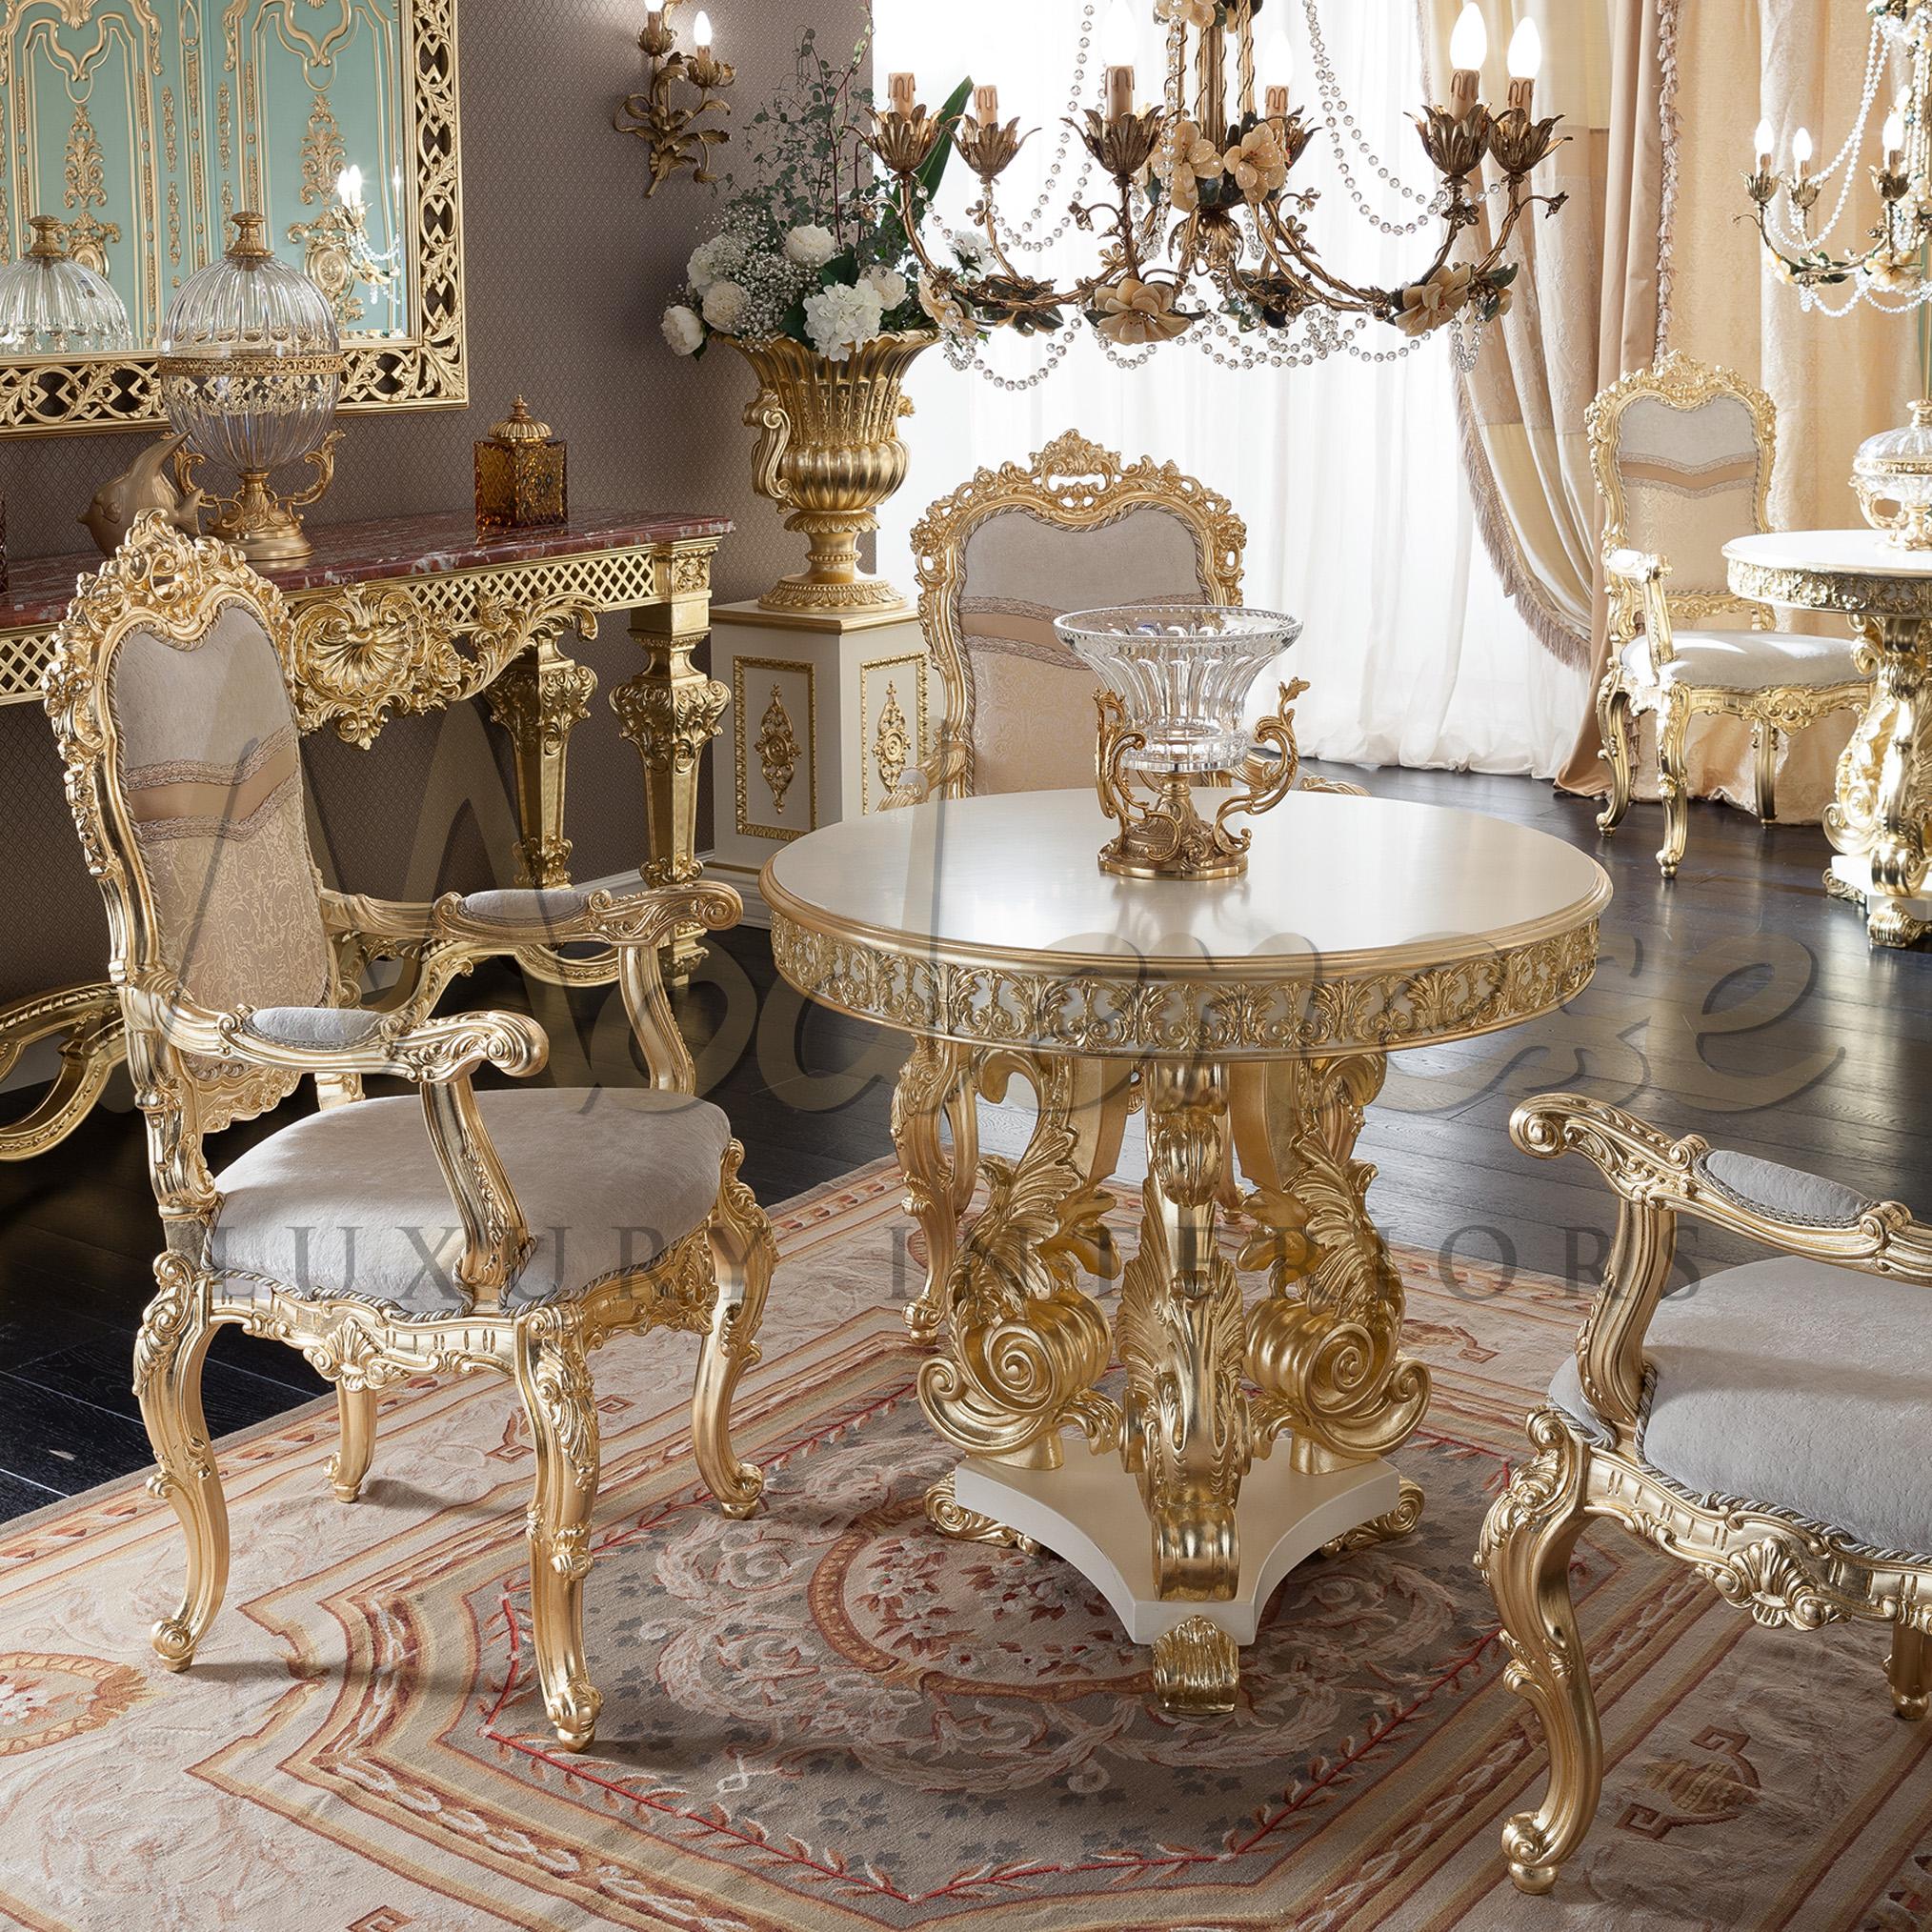 Diese großartige, geschliffene Kristallschale von Modenese Luxury Interiors zeichnet sich durch eine einzigartige, transparente Kristallkomposition aus, die perfekt mit der goldfarbenen, dreifach verzweigten Bronzestruktur harmoniert. Damit ist sie